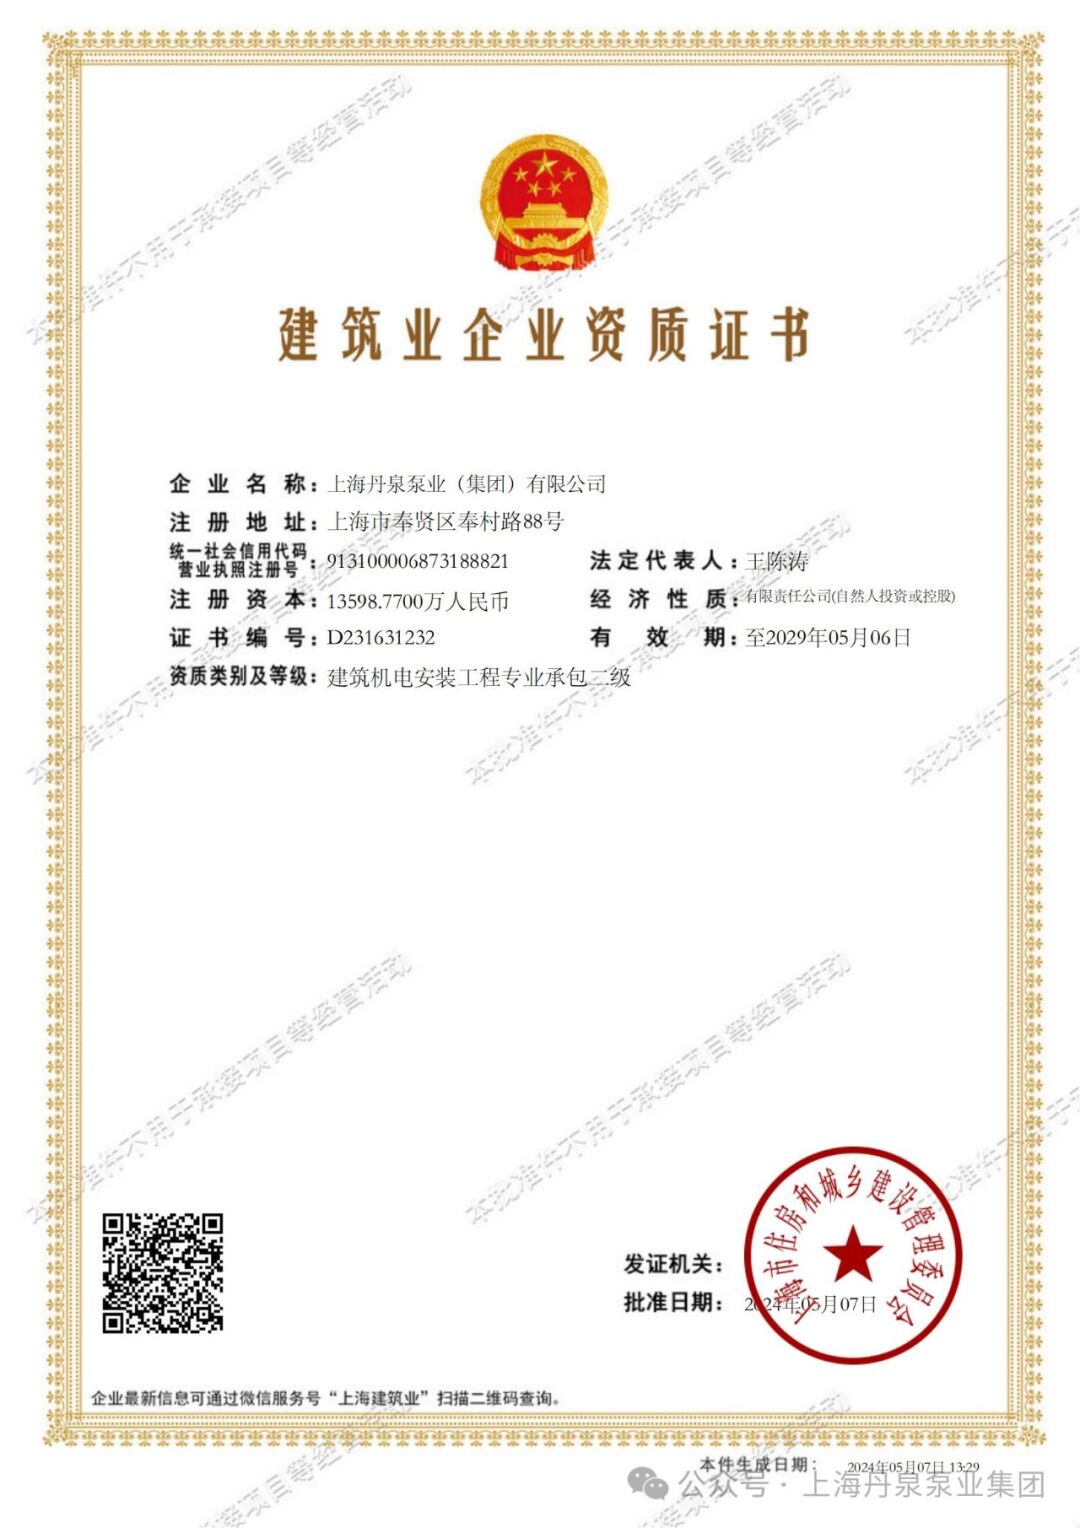 上海丹泉泵业集团荣获建筑机电安装工程专业承包二级证书